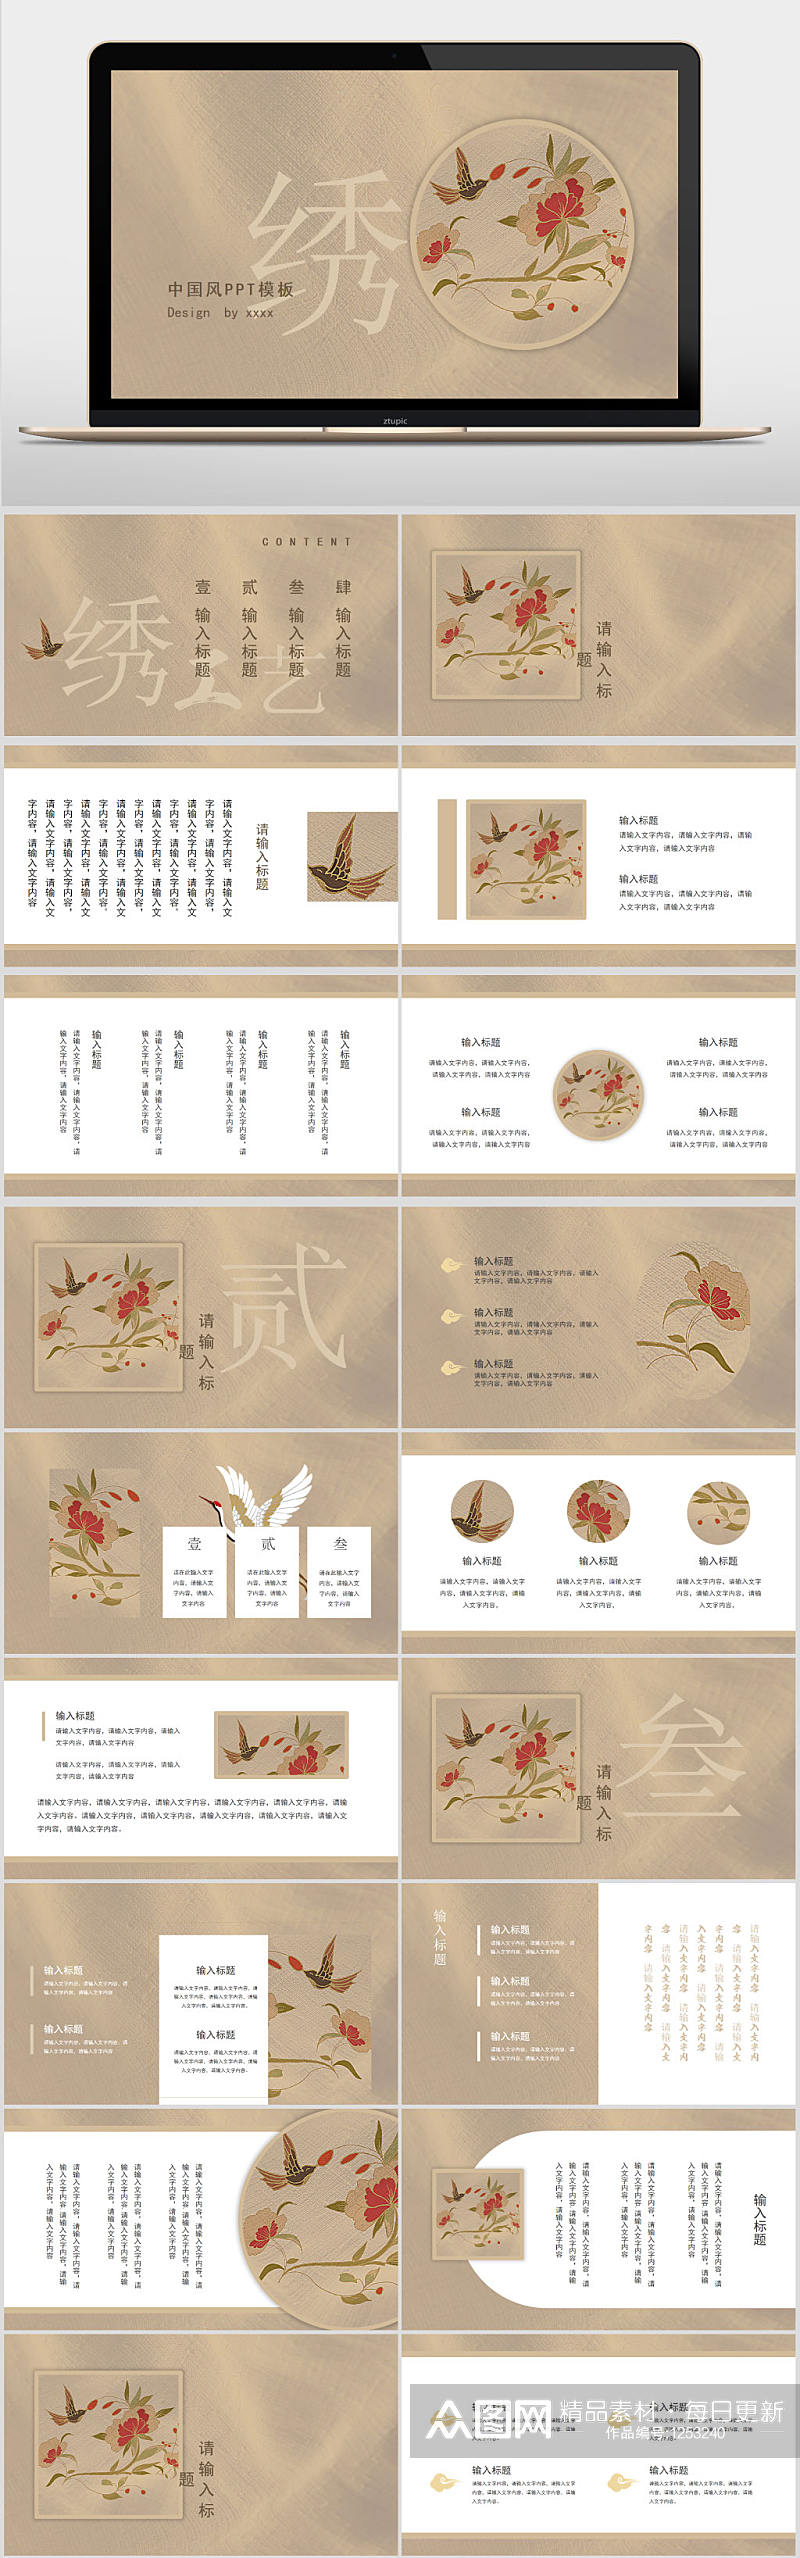 简约复古文艺传统文化刺绣中国风PPT模板素材